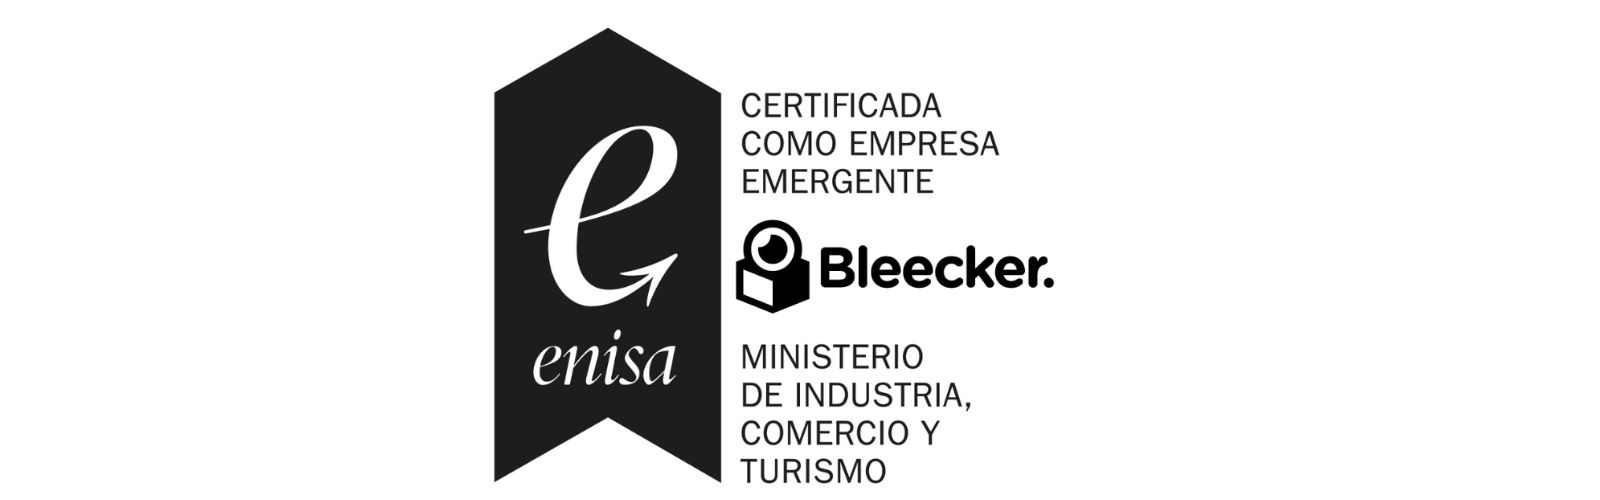 La EBT de la UMU Bleecker Technologies logra el certificado de “Empresa Emergente”